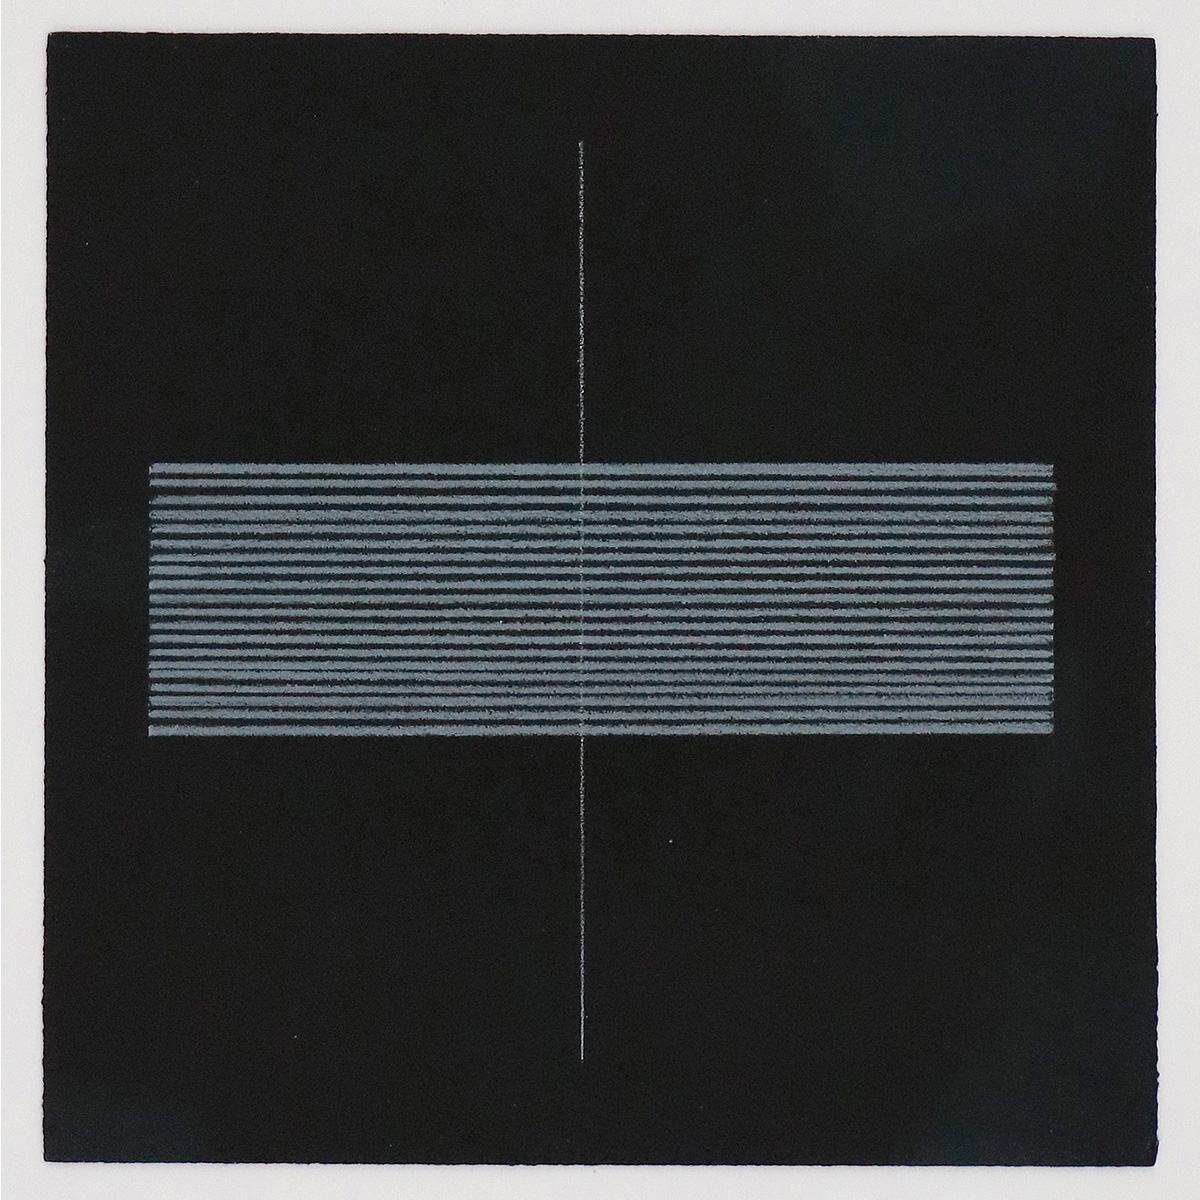 Schwarzer Grund 3, 200216,5 x 16,5 cm in 25,2 x 24,7 cmFarbstift auf grundiertem Papier; gerahmt